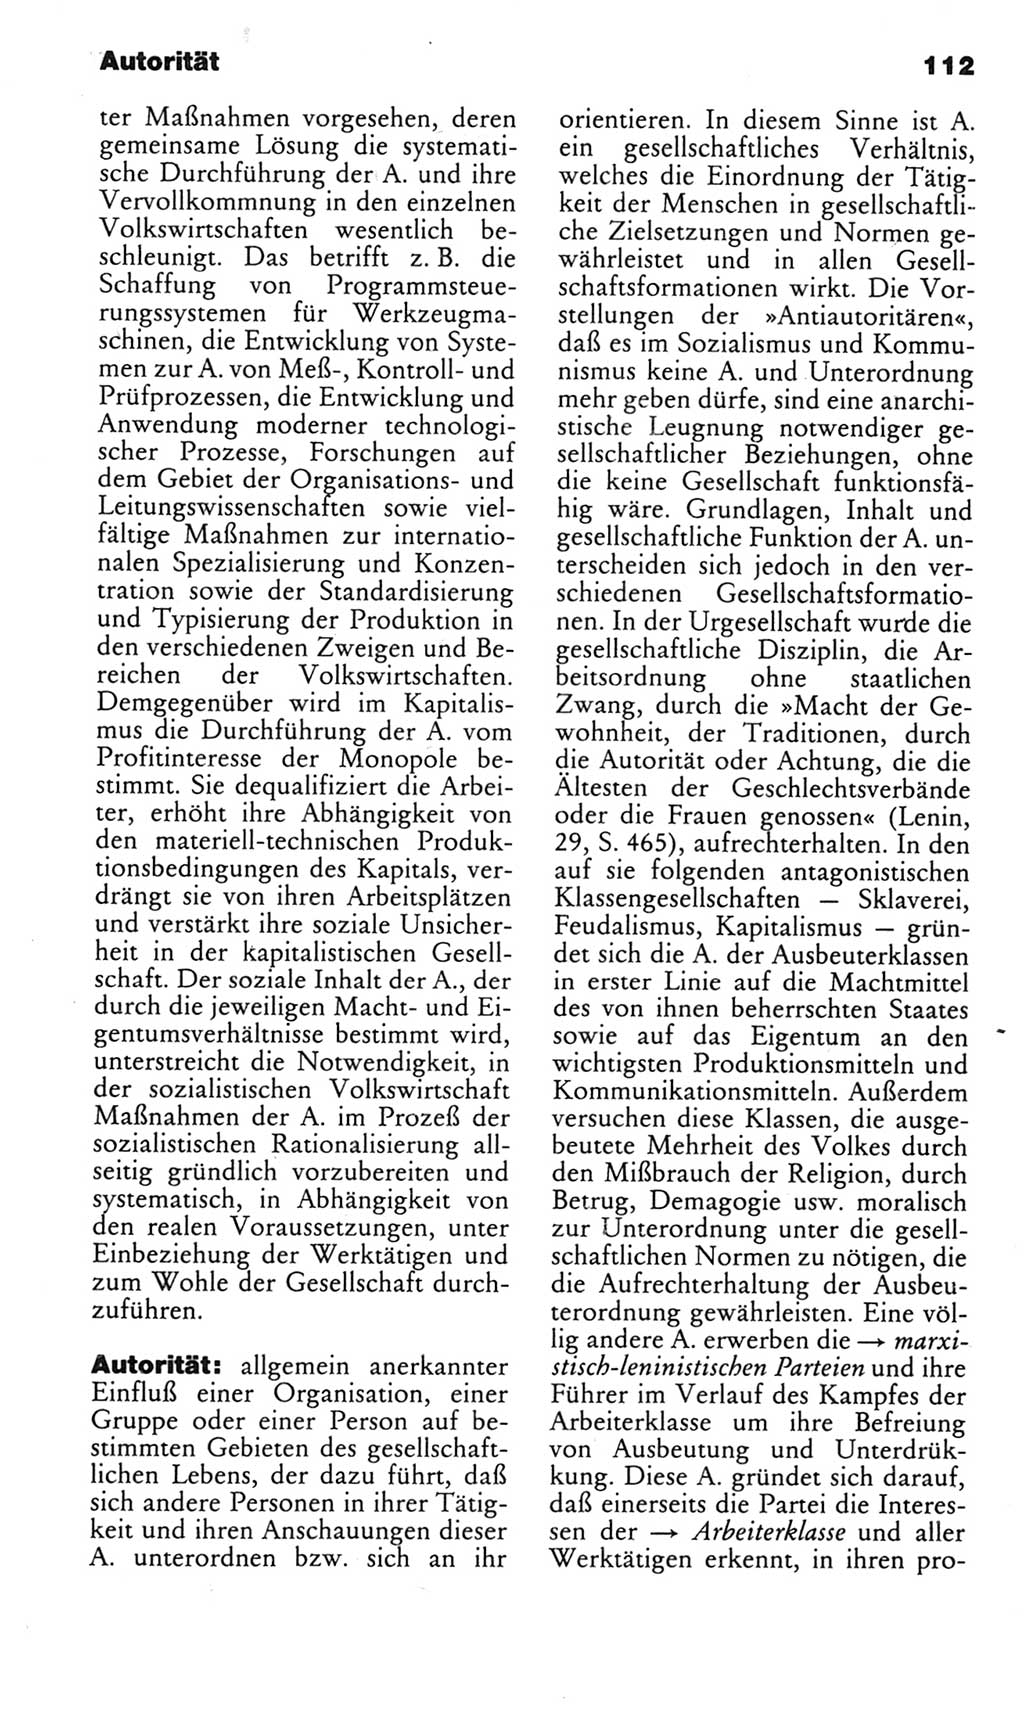 Kleines politisches Wörterbuch [Deutsche Demokratische Republik (DDR)] 1983, Seite 112 (Kl. pol. Wb. DDR 1983, S. 112)